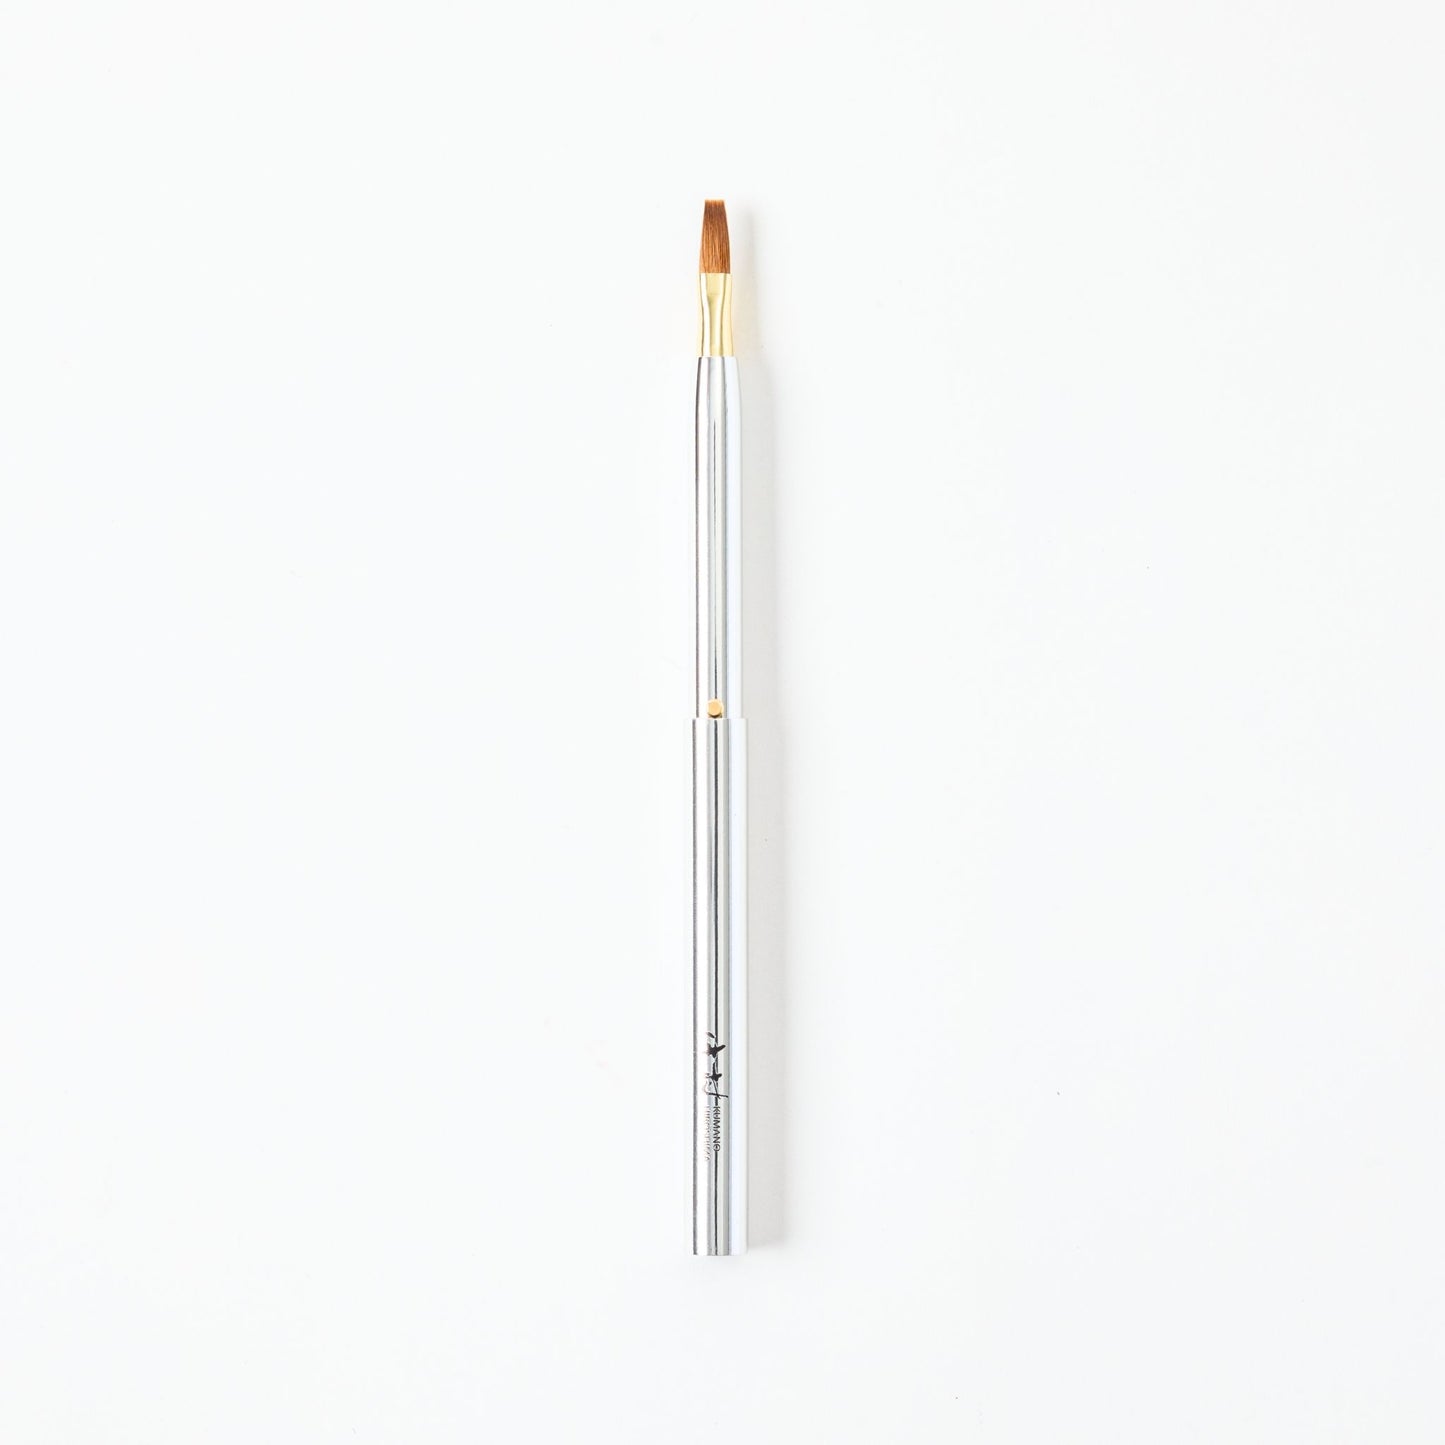 Kumano Makeup Brush Gift Set (Cheek brush & Portable Lip Brush)